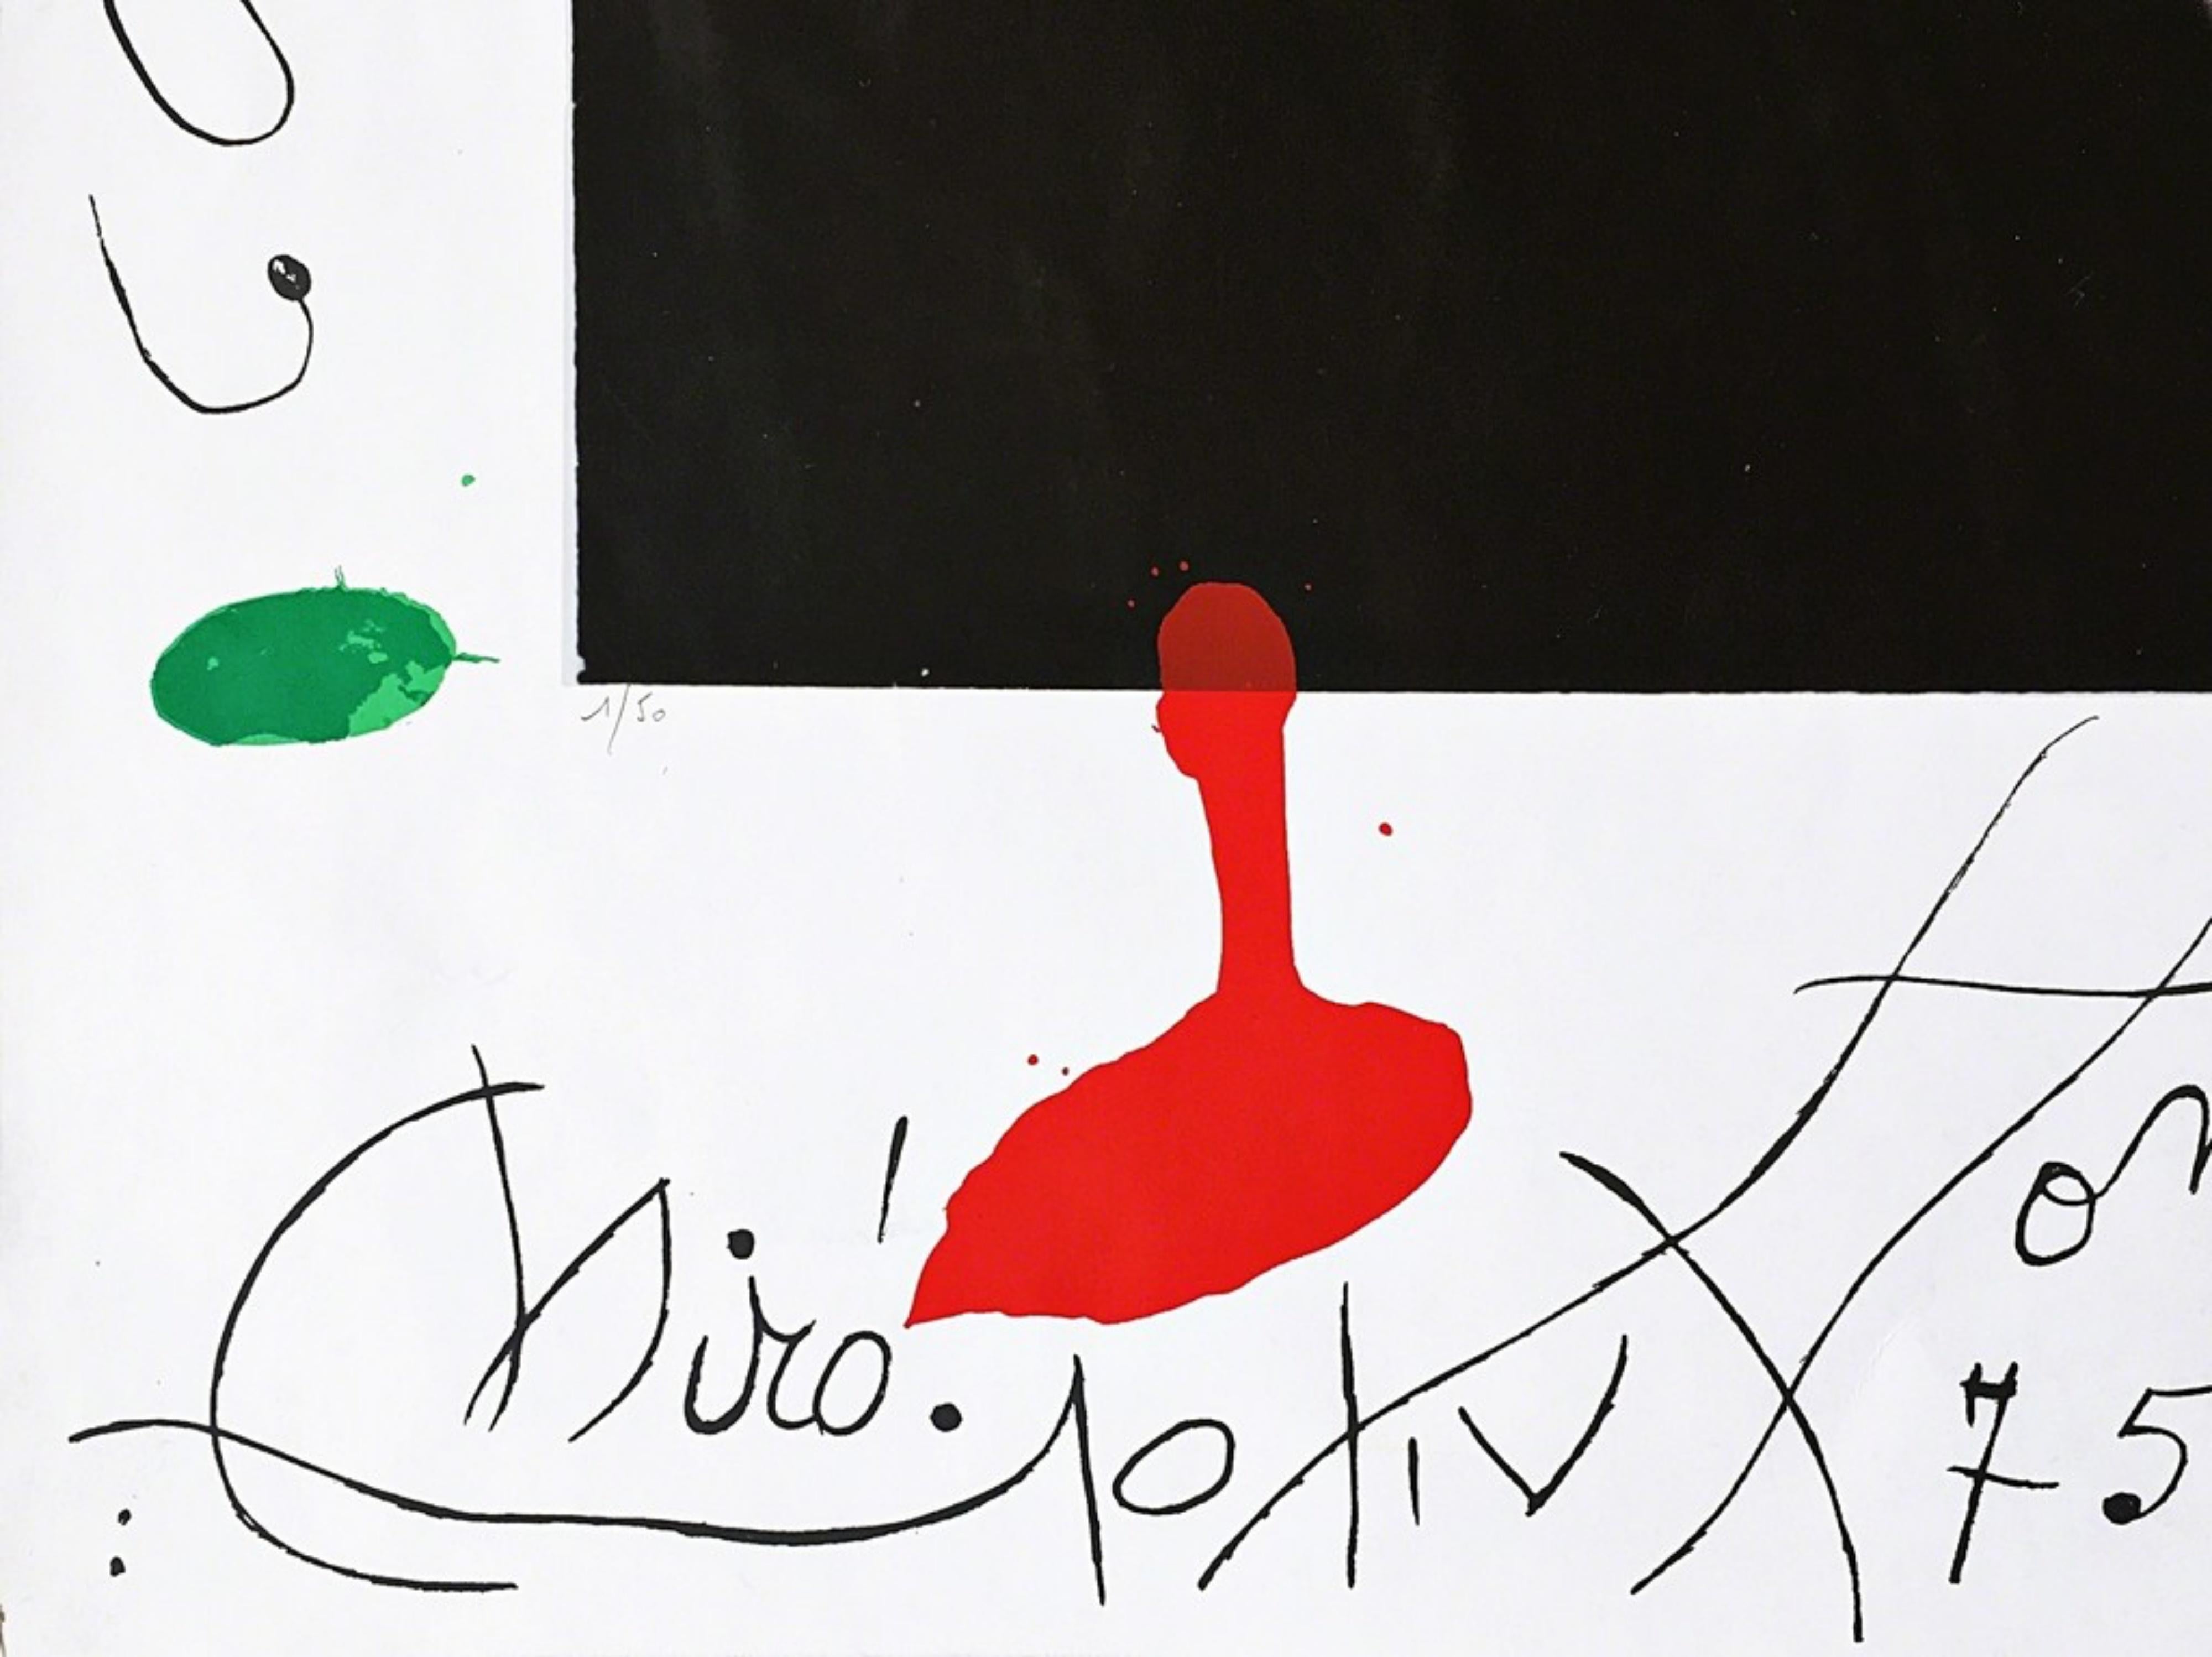 Joan Miro
Hommage à Picasso, 1975
Sérigraphie et photographie sur papier vélin. Signé deux fois : signé à la main, numéroté 1/50 au crayon et daté, et également signé sur la plaque. (d'un très petit tirage de seulement 50 exemplaires)
20 × 24